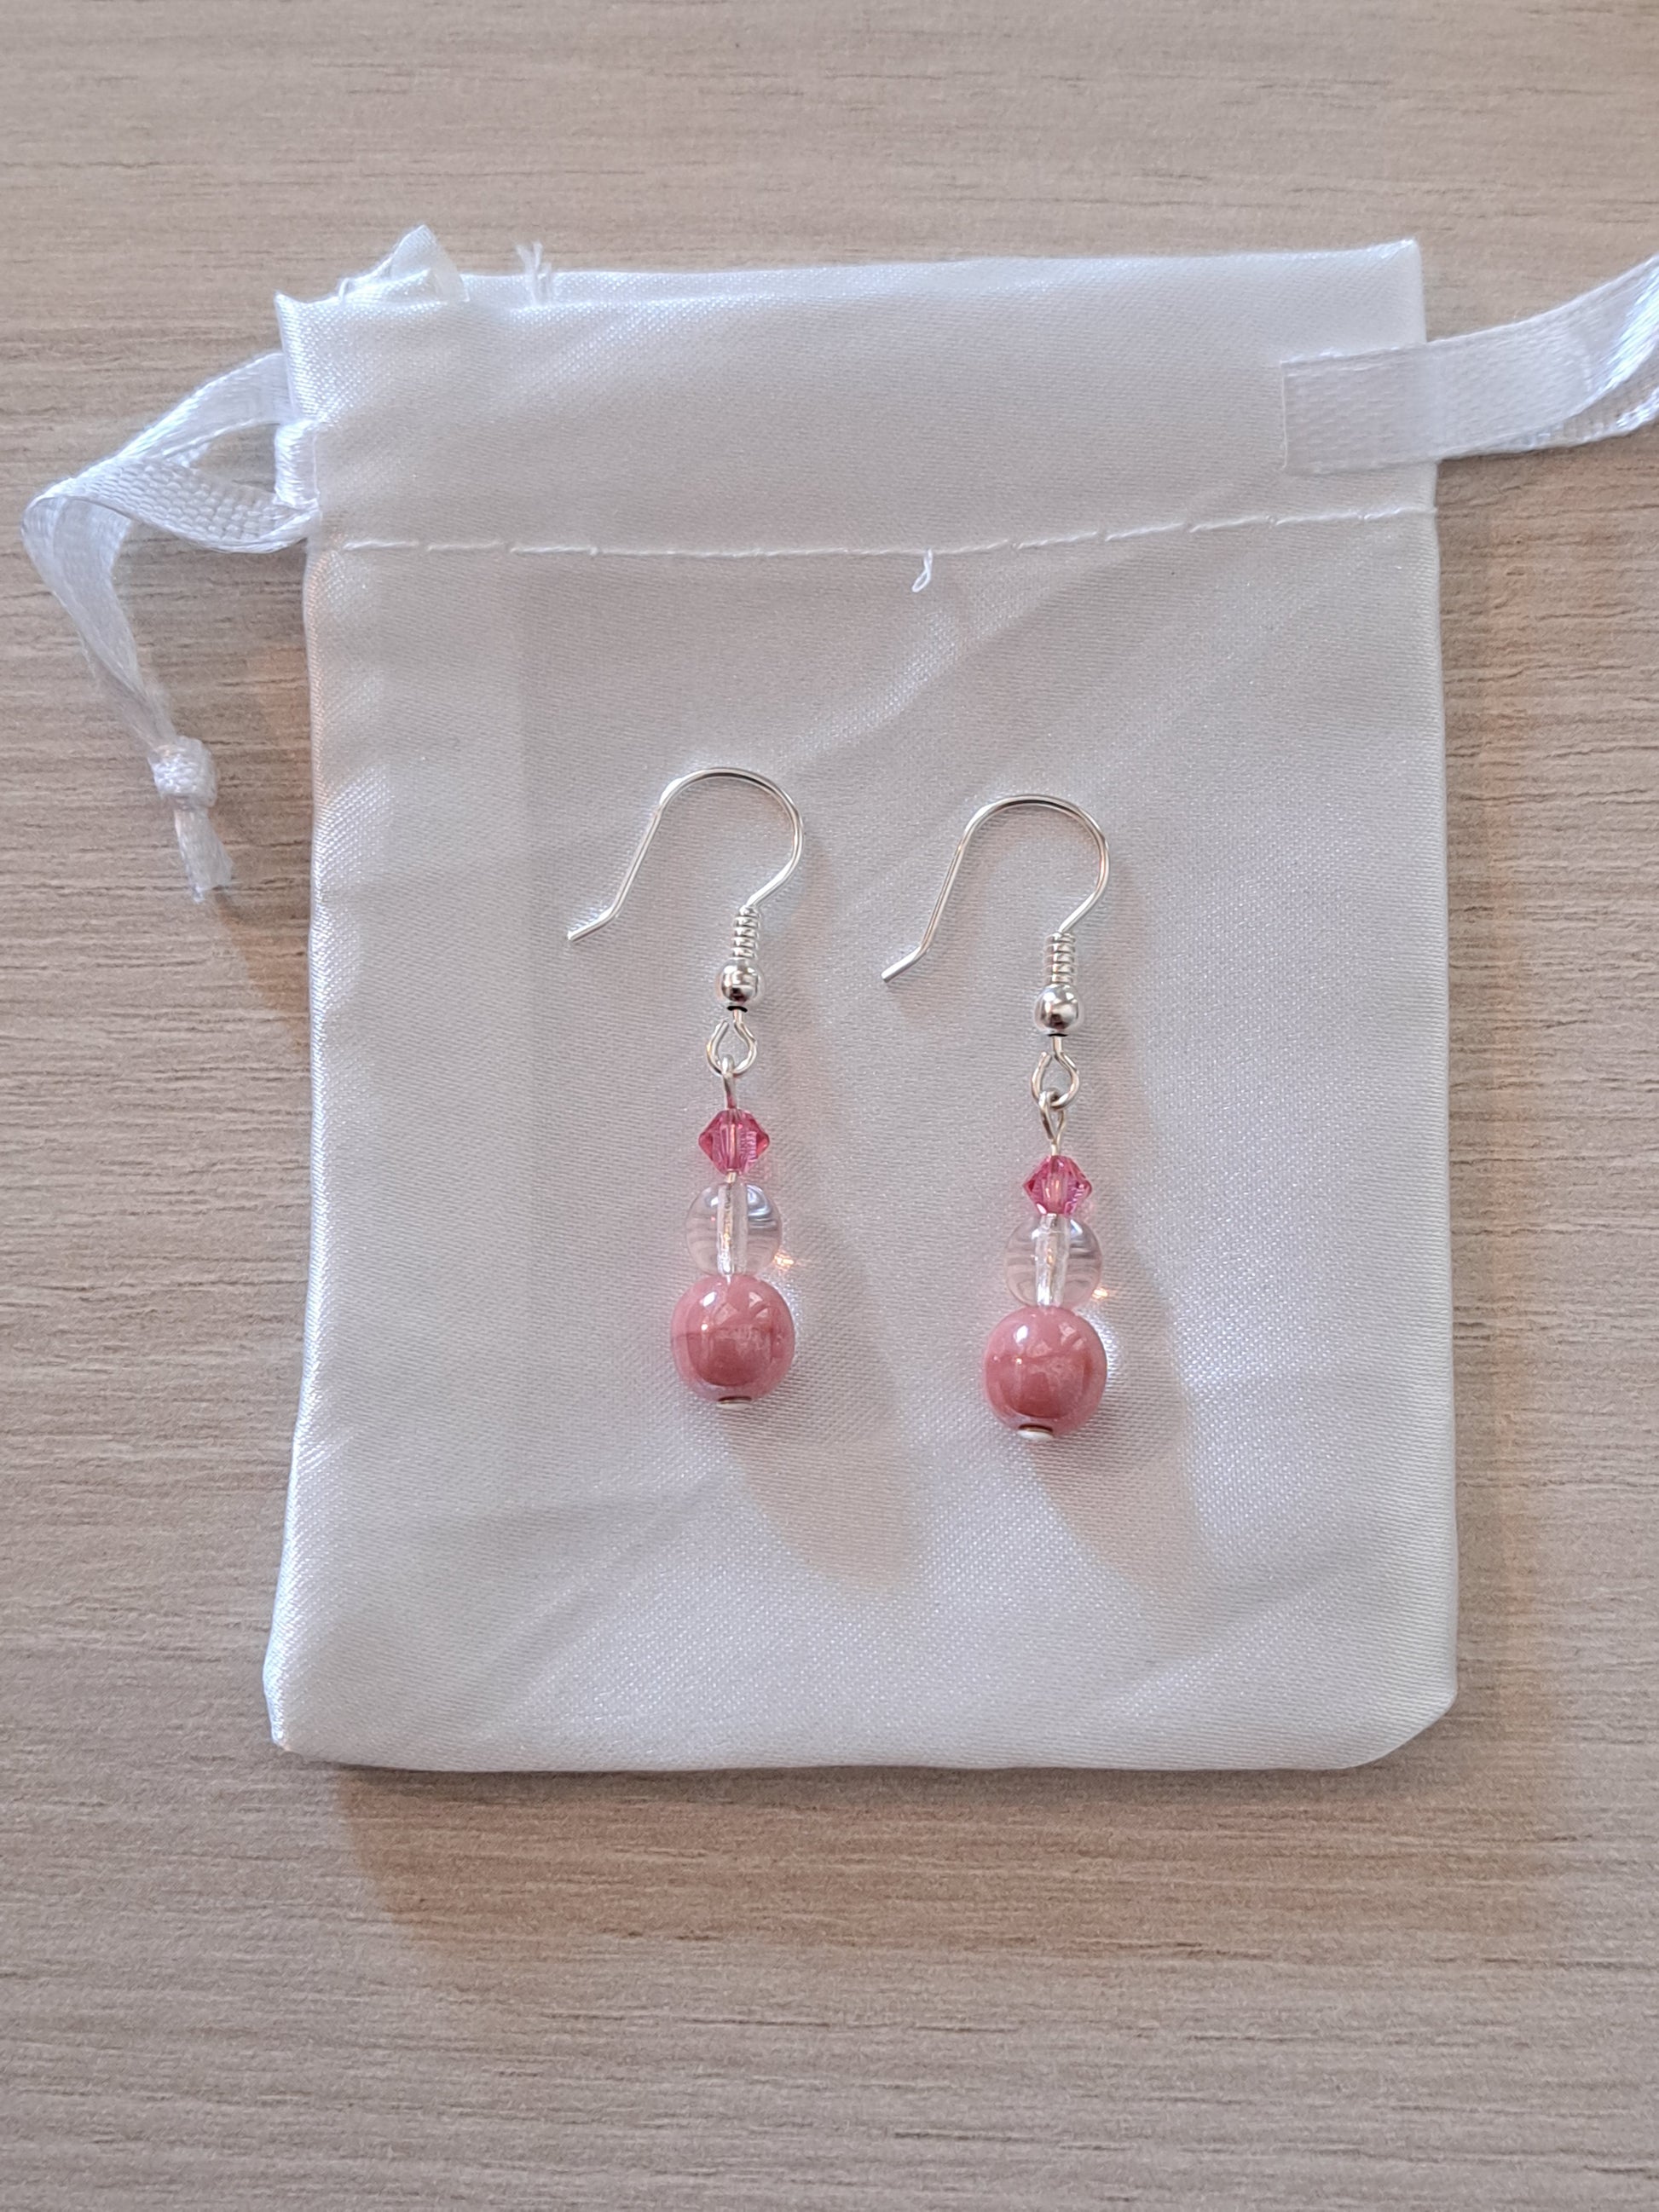 Boucle d'oreilles en argent avec perles roses pour octobre rose. Site de bijoux en ligne